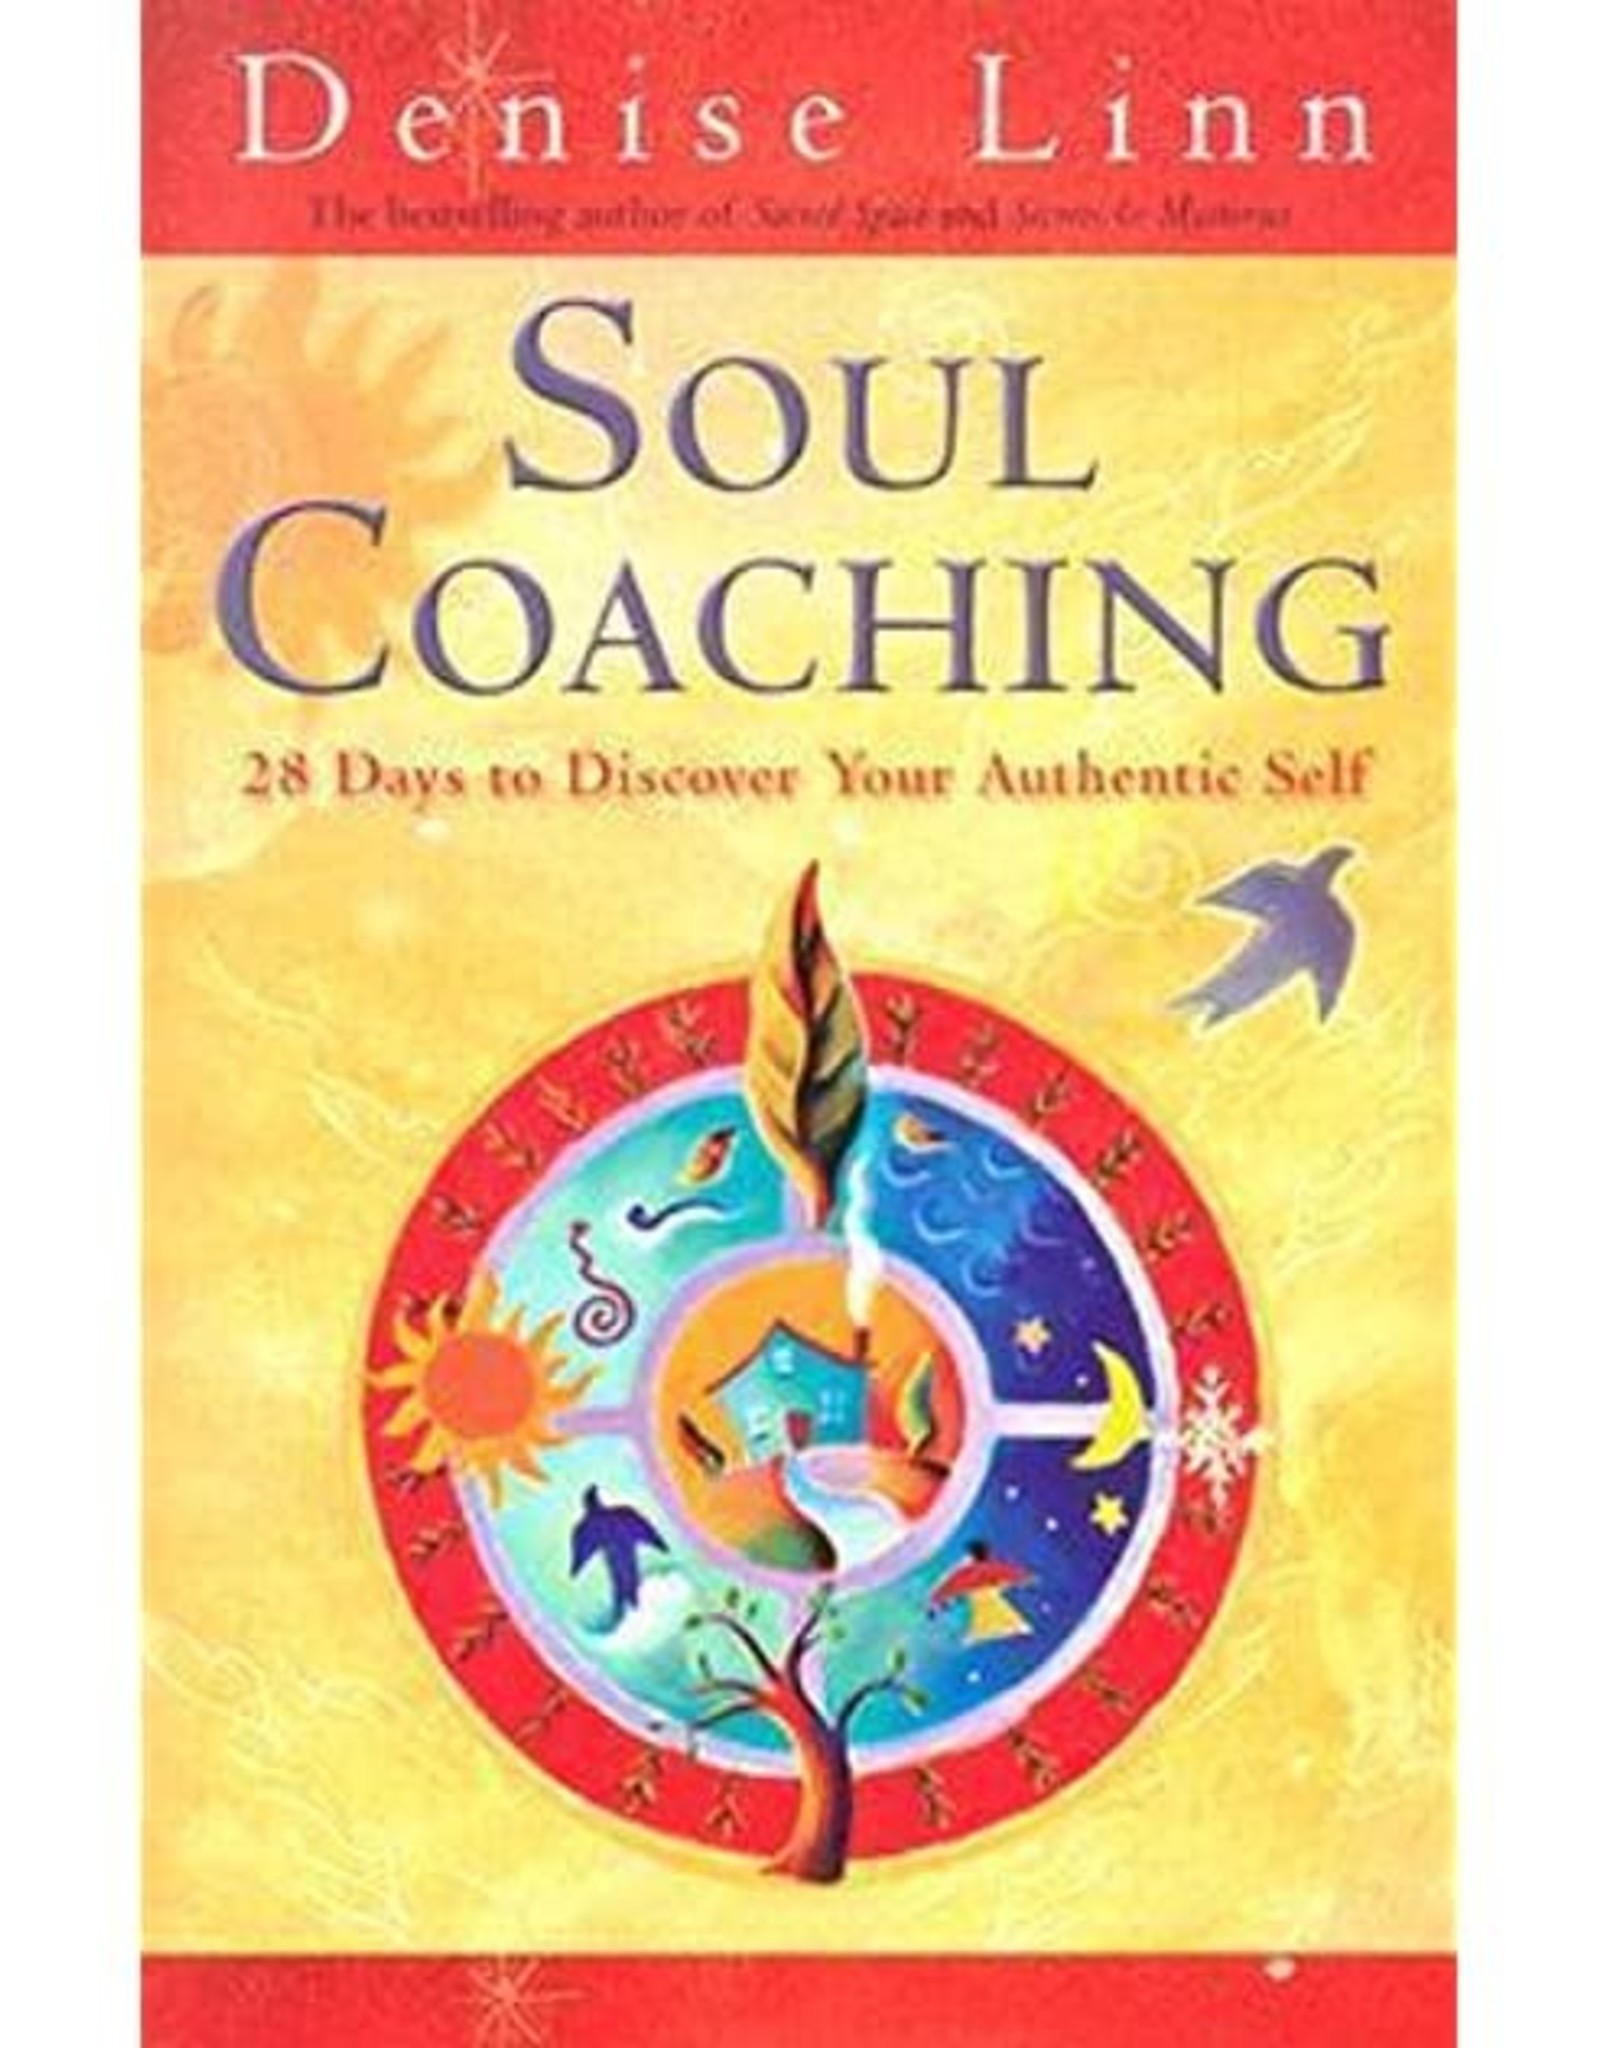 Denise Linn Soul Coaching by Denise Linn